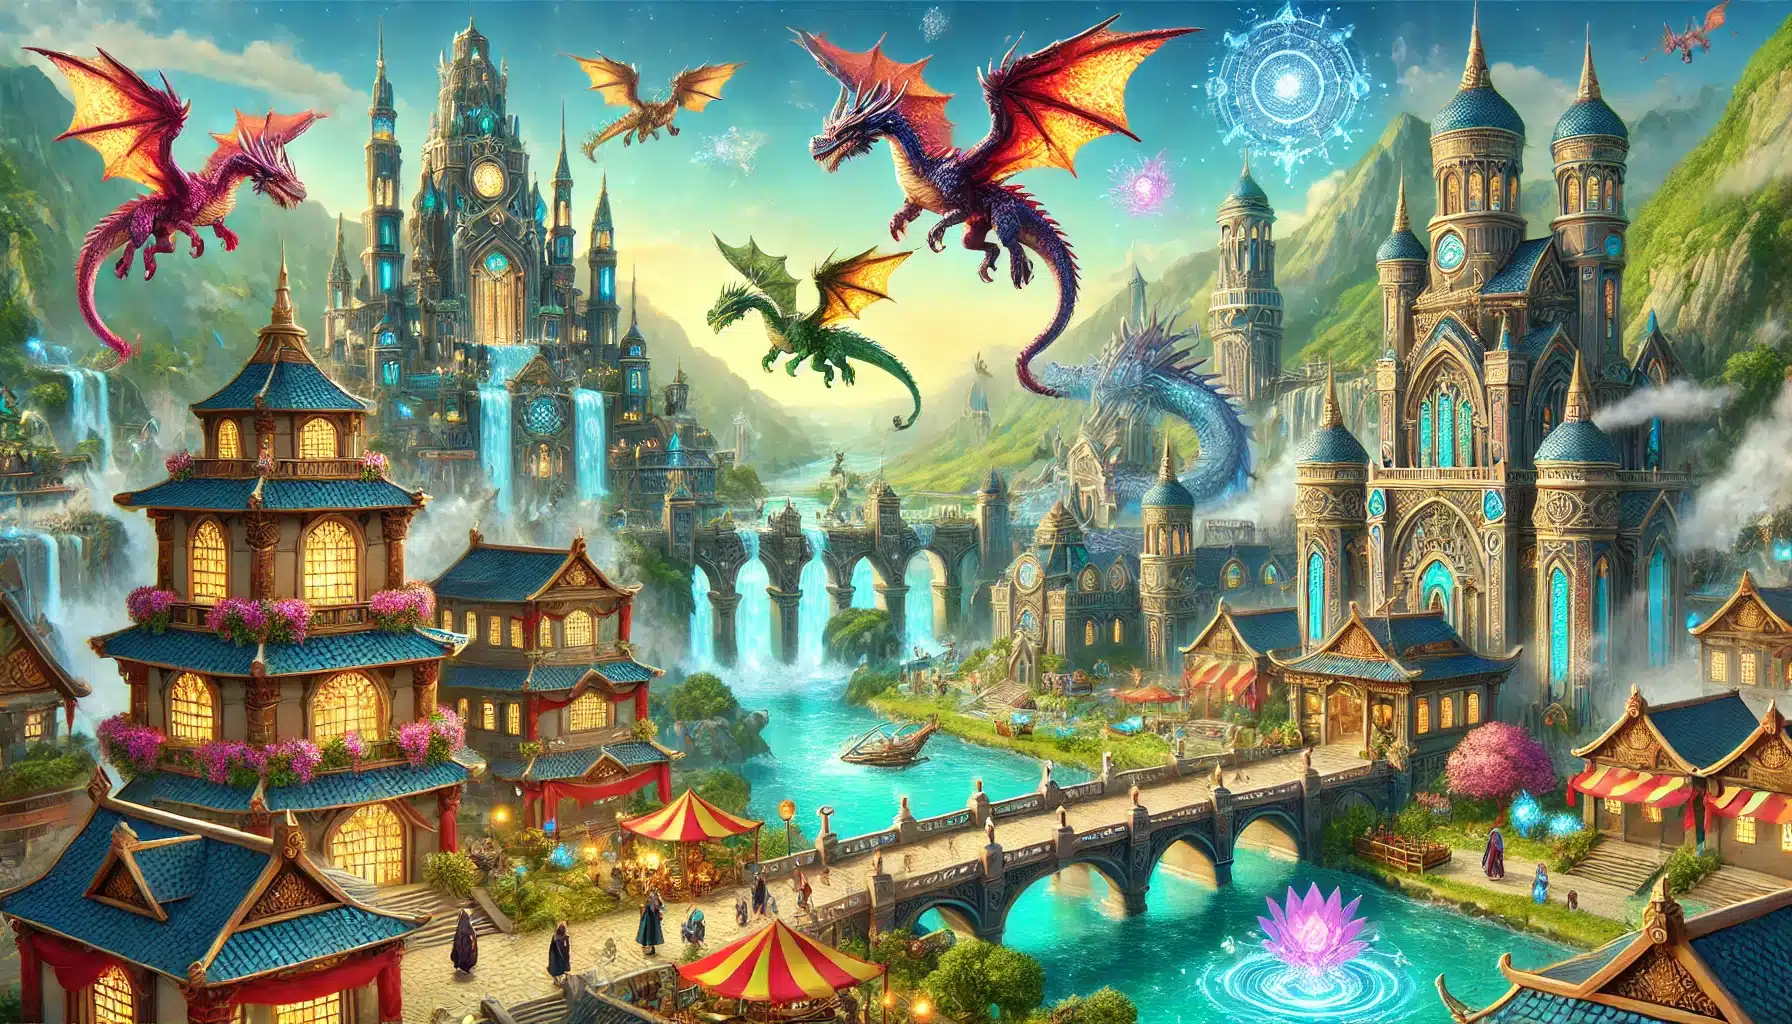 Colorida ciudad de fantasía con edificios ornamentados y cascadas, con dragones voladores en el cielo y mercados vibrantes debajo, que ilustran el mundo mágico de Dragon City.